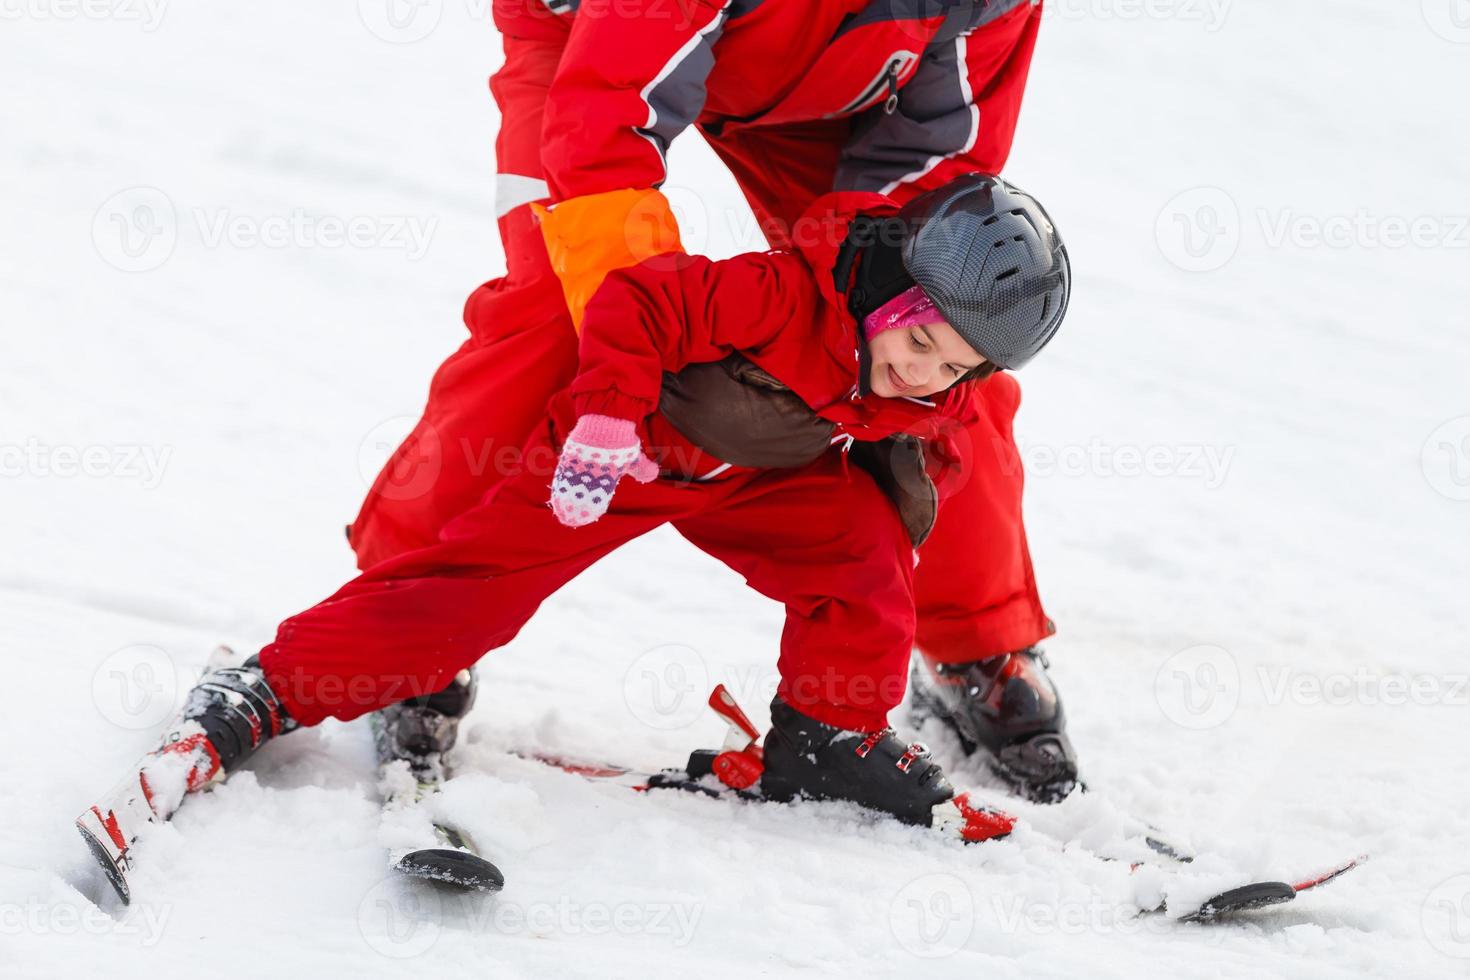 petite fille apprend à skier après une chute elle glisse lentement sur des skis dans de la neige douce et fraîche photo